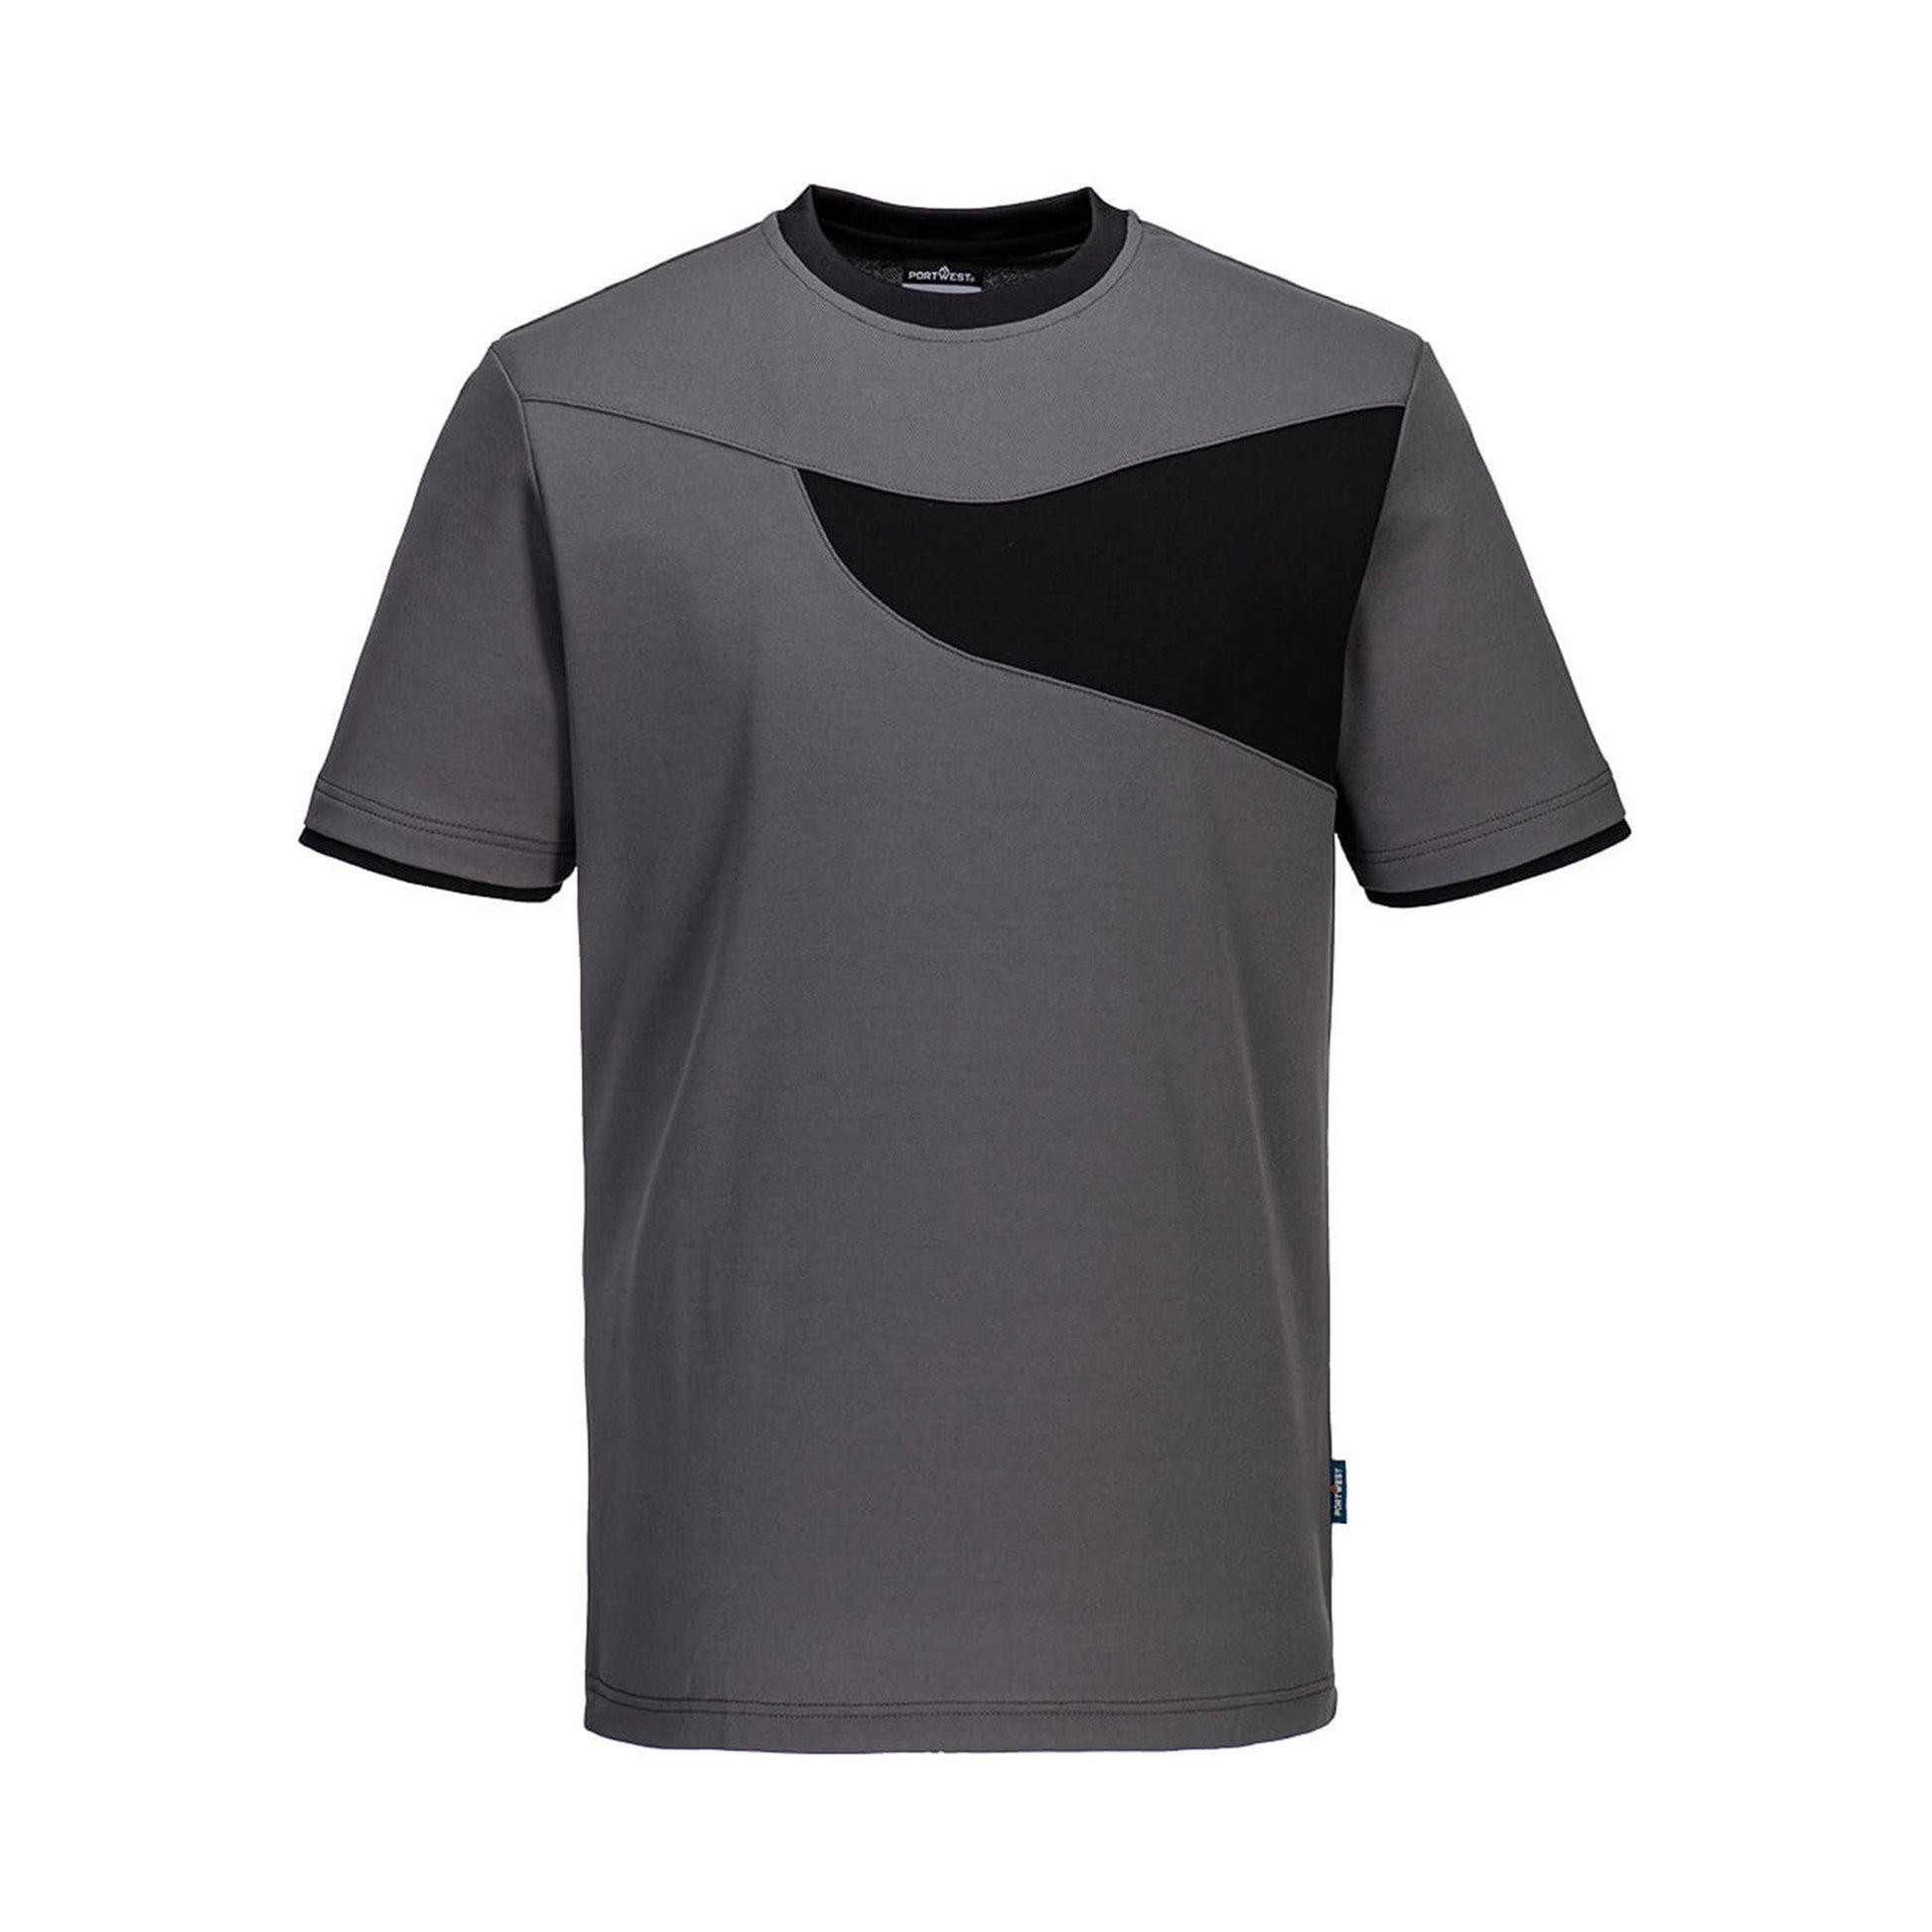 Portwest PW2 Cotton Comfort T-Shirt PW211 Zoom grey/Black